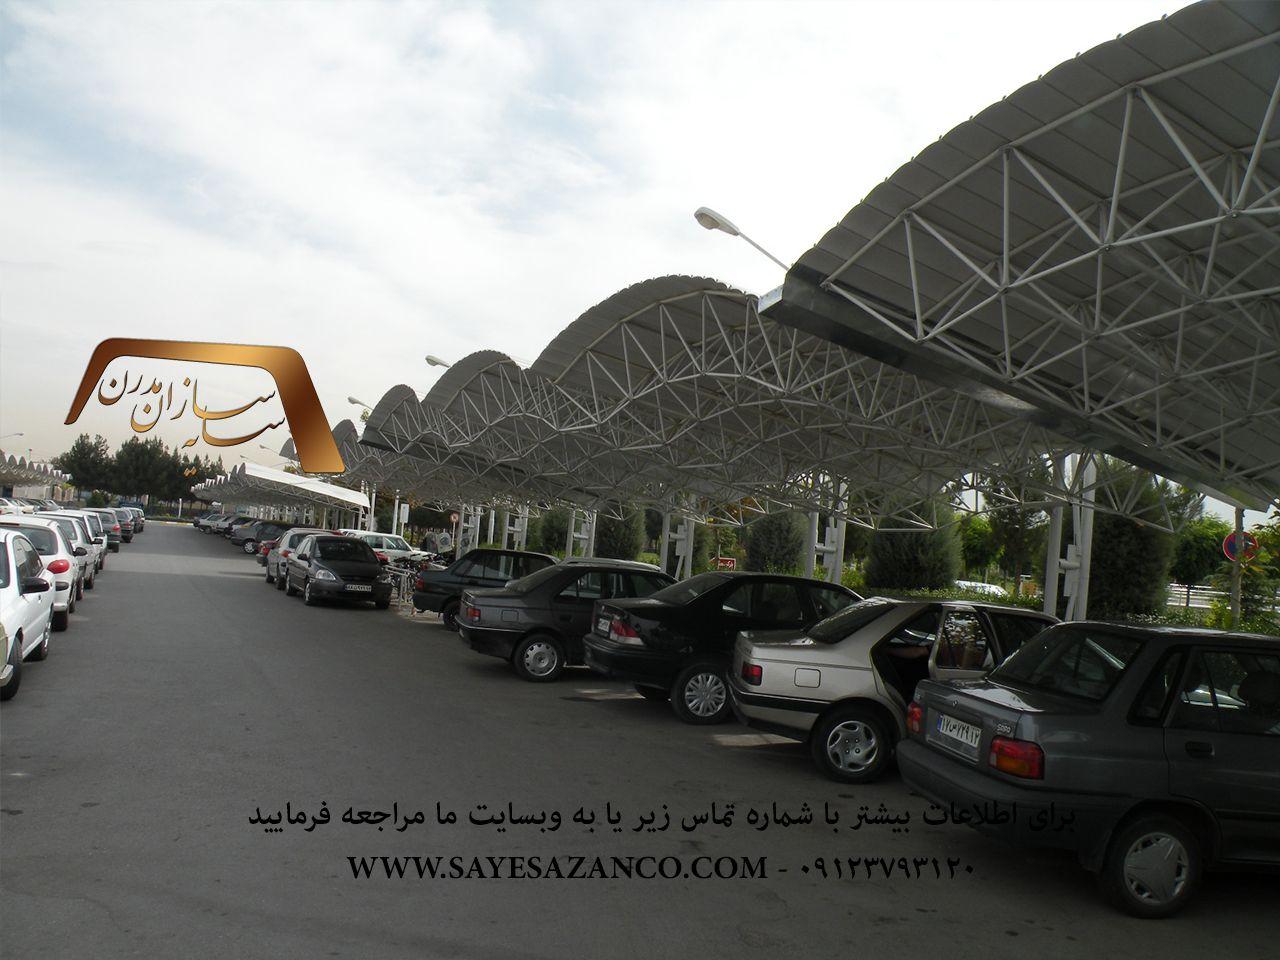 ساخت سایبان پارکینگ خودرو،سایه بان ماشین،سایبان پیش ساخته،سایبان ماشین اداری،سایبان حیاط در تهران ،مشهد و کرج